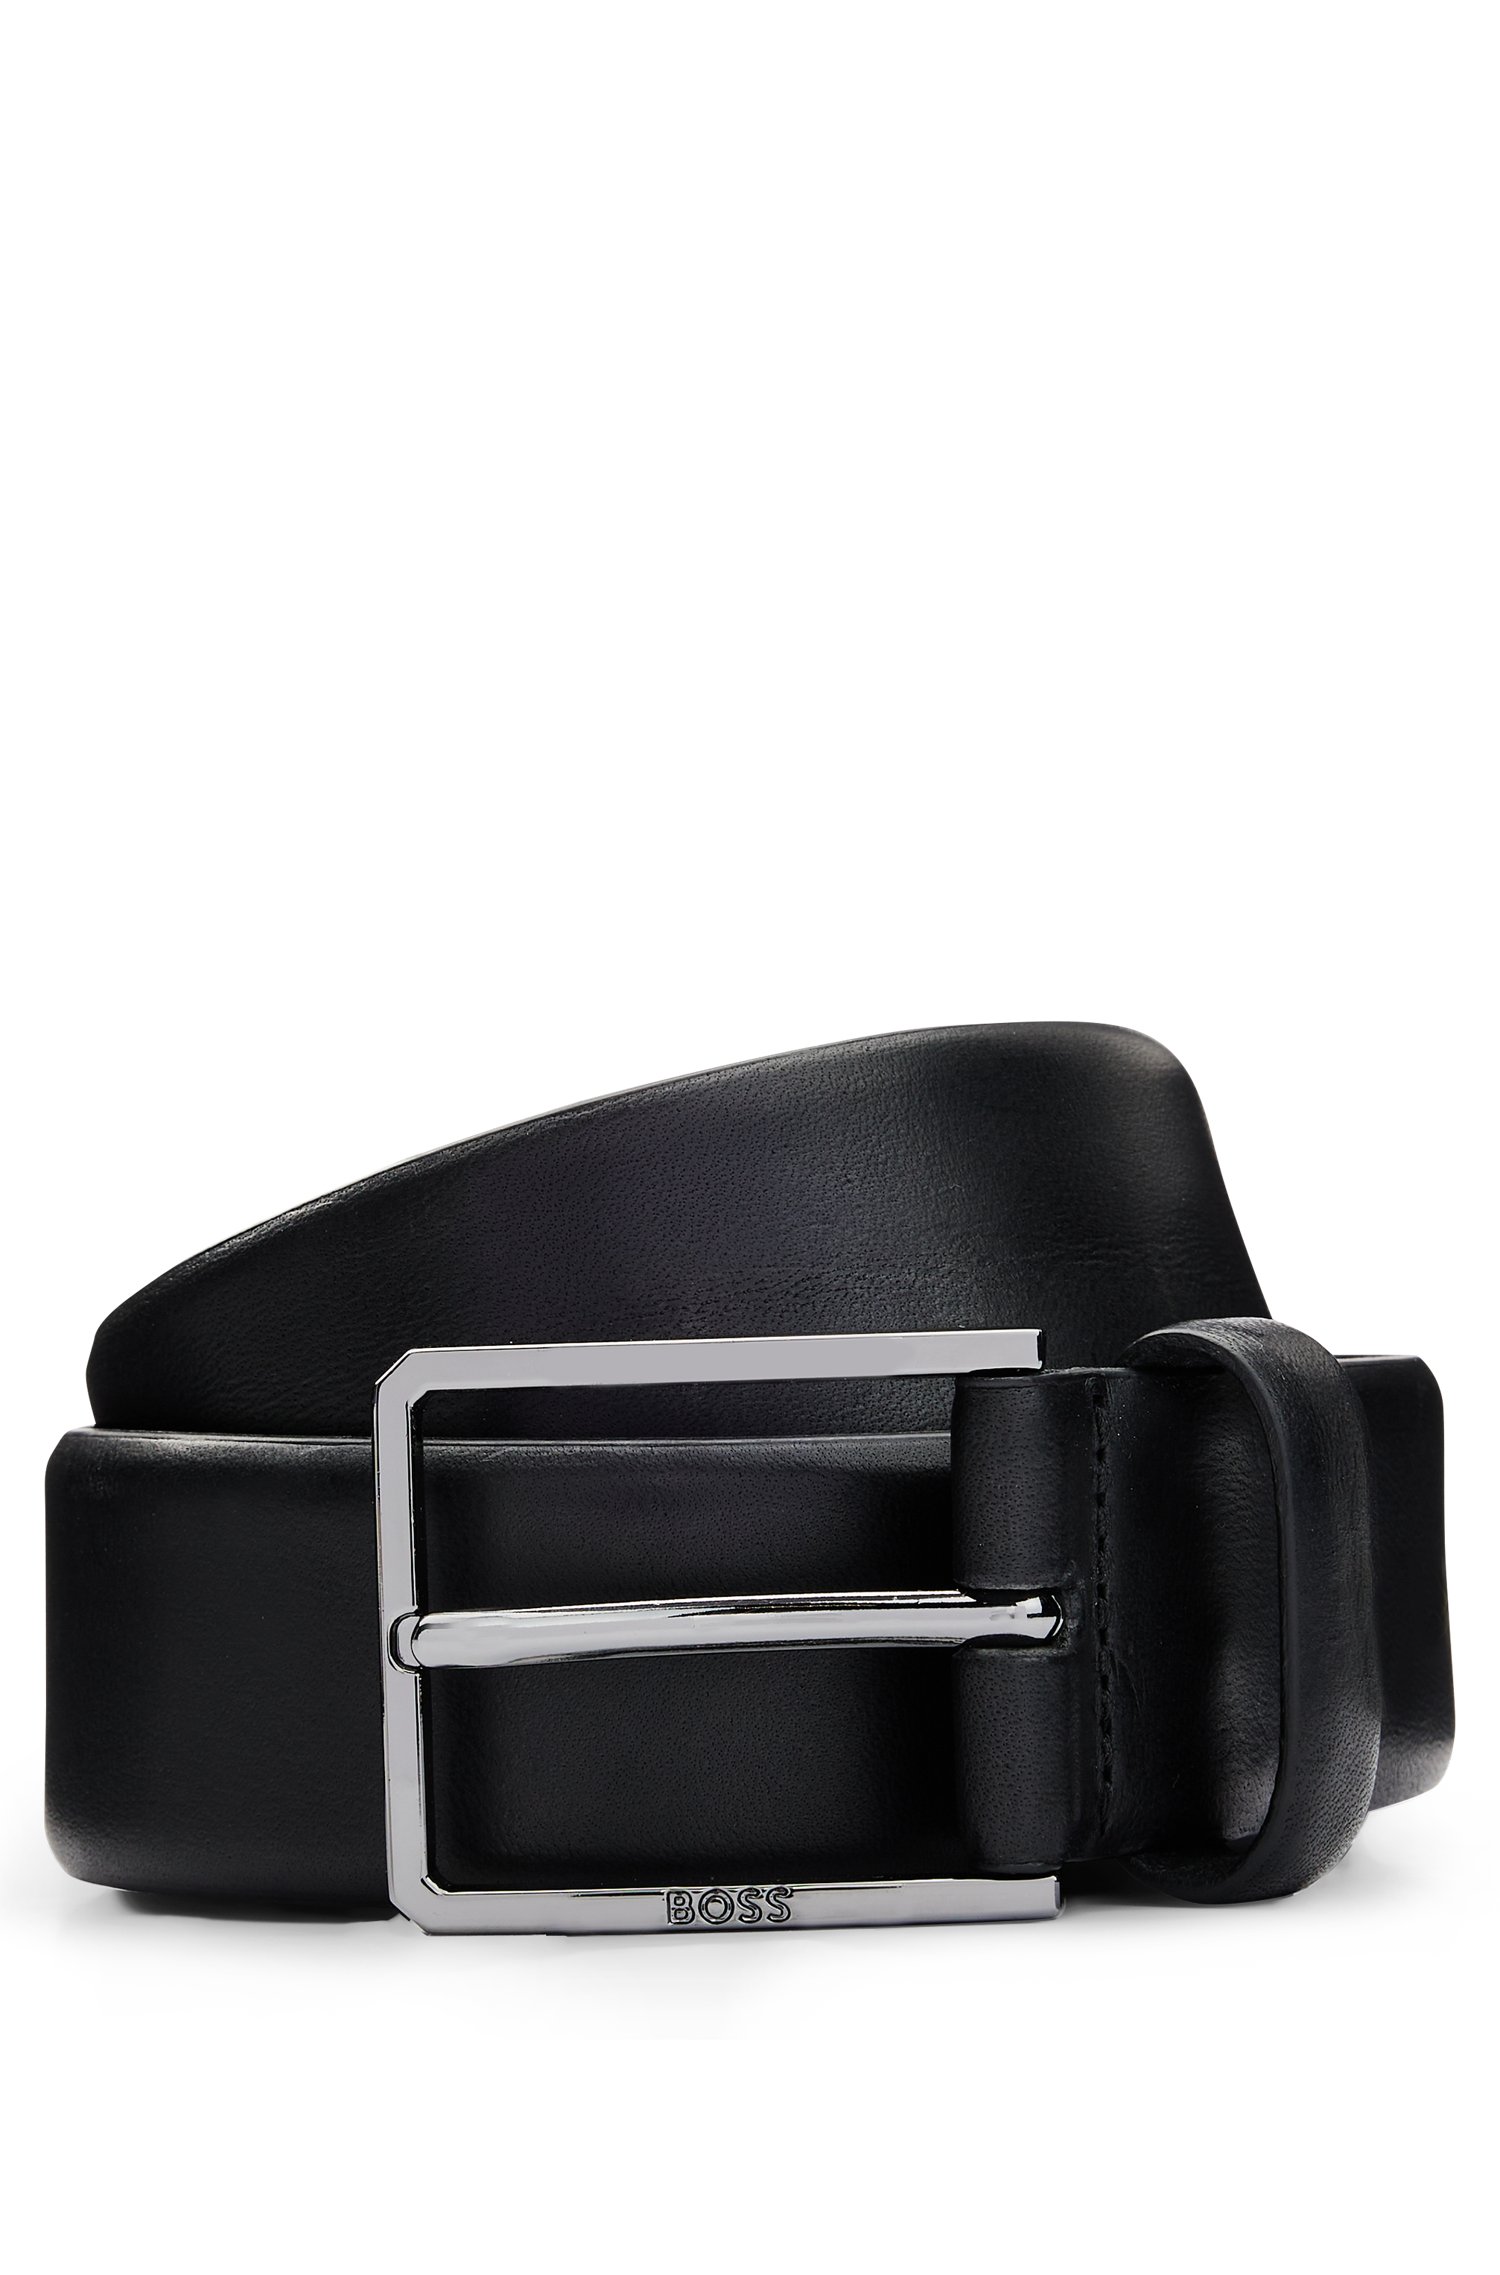 Italian-leather belt with polished gunmetal hardware